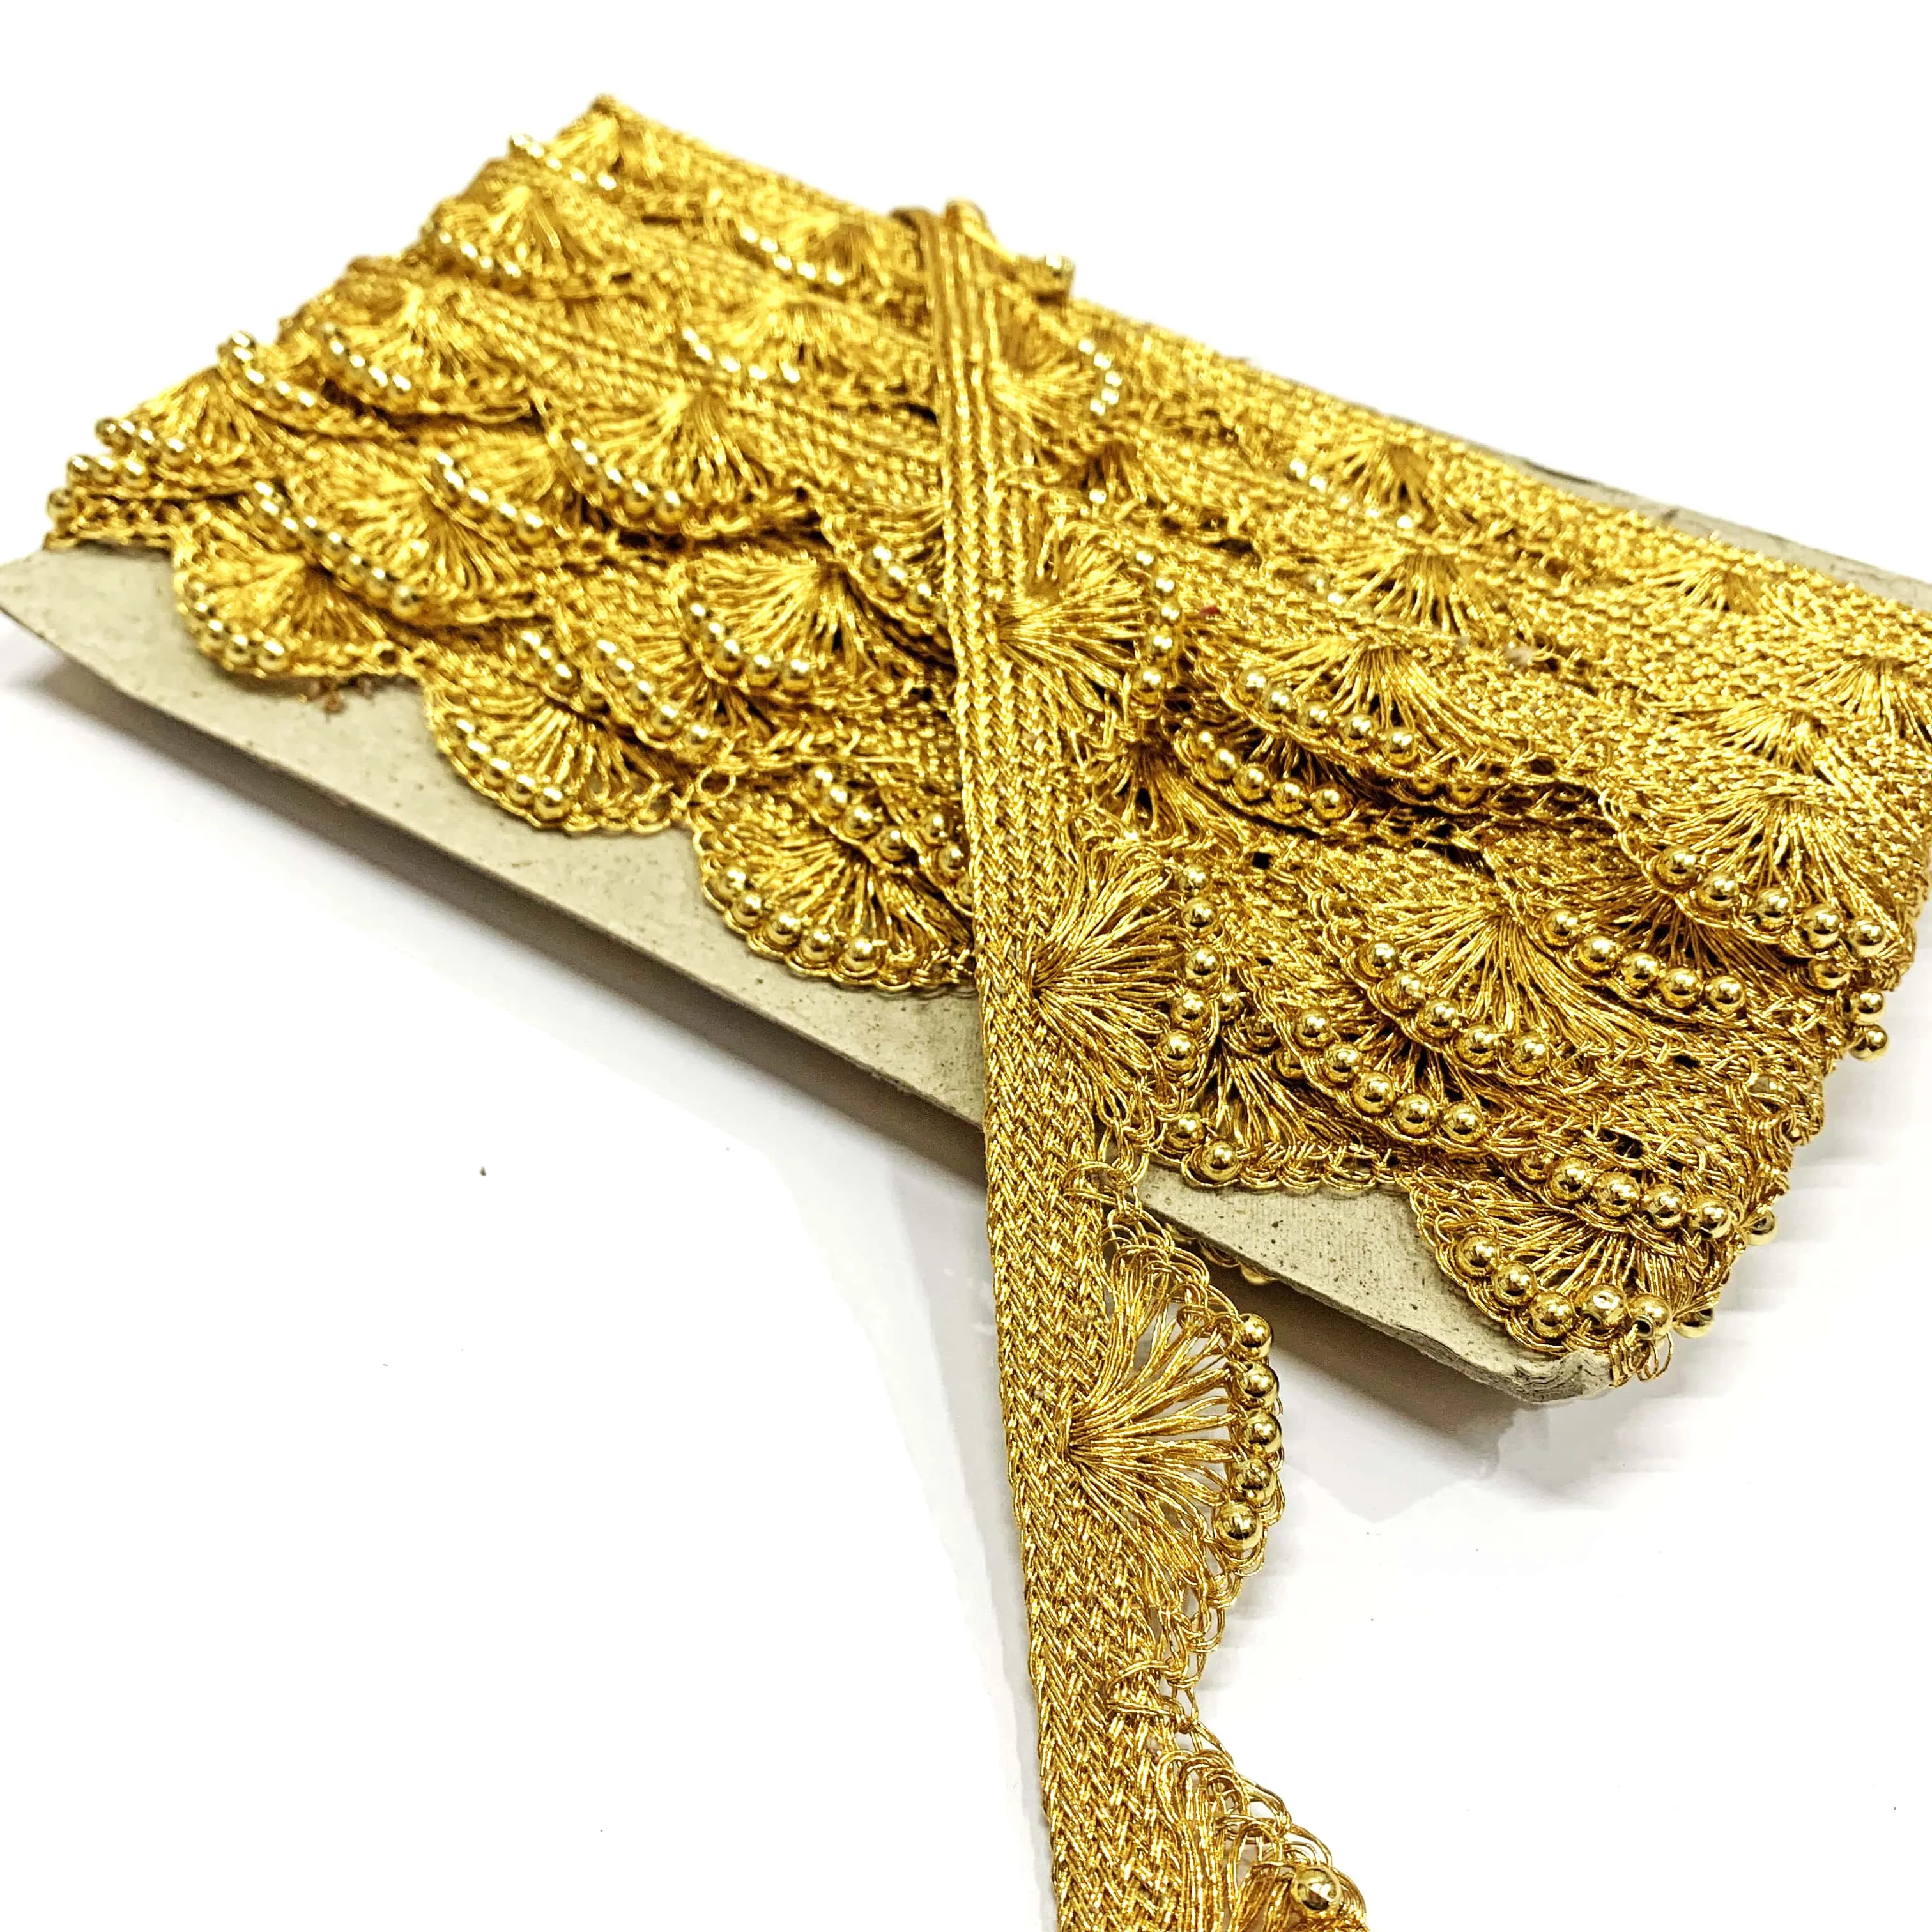 LUREX ทองเครื่องประดับมือแบบโบราณ,ผ้าลูกไม้ปักลายครึ่งกลมสำหรับผู้หญิงเสื้อผ้าและของประดับตกแต่งที่นิยมใช้กันมากที่สุดในยุคกลาง